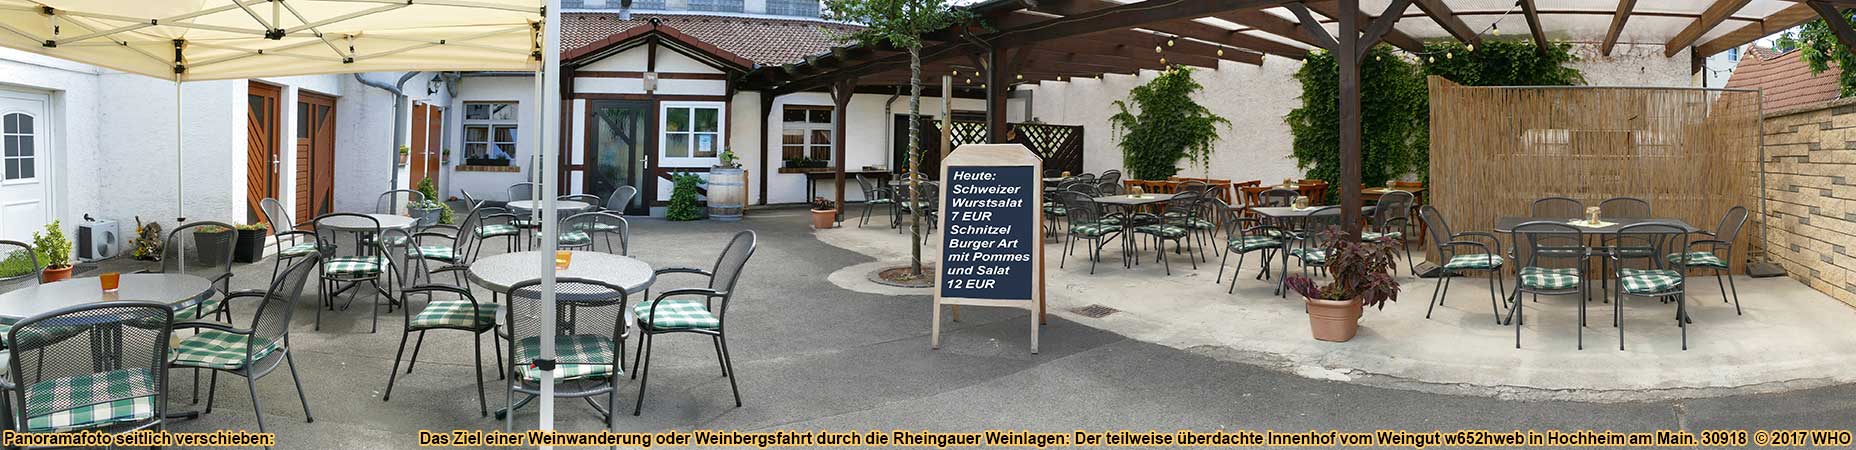 Das Ziel einer Weinwanderung oder Weinbergsfahrt durch die Rheingauer Weinlagen: Der teilweise überdachte Innenhof vom Weingut w652hweb in Hochheim am Main.